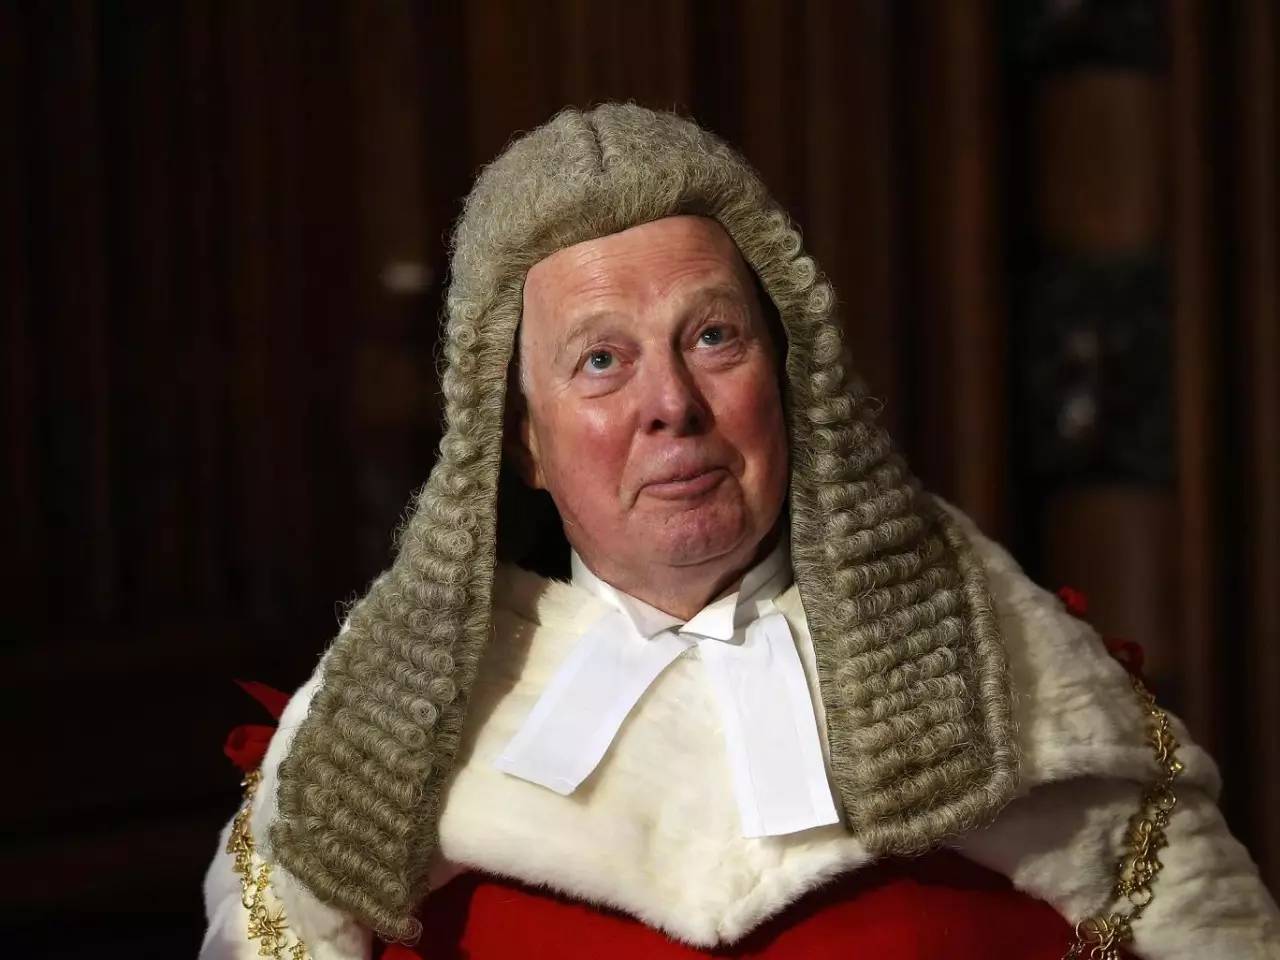 的御用大律师,并从2013年起担任英格兰和威尔士高等法院首席大法官